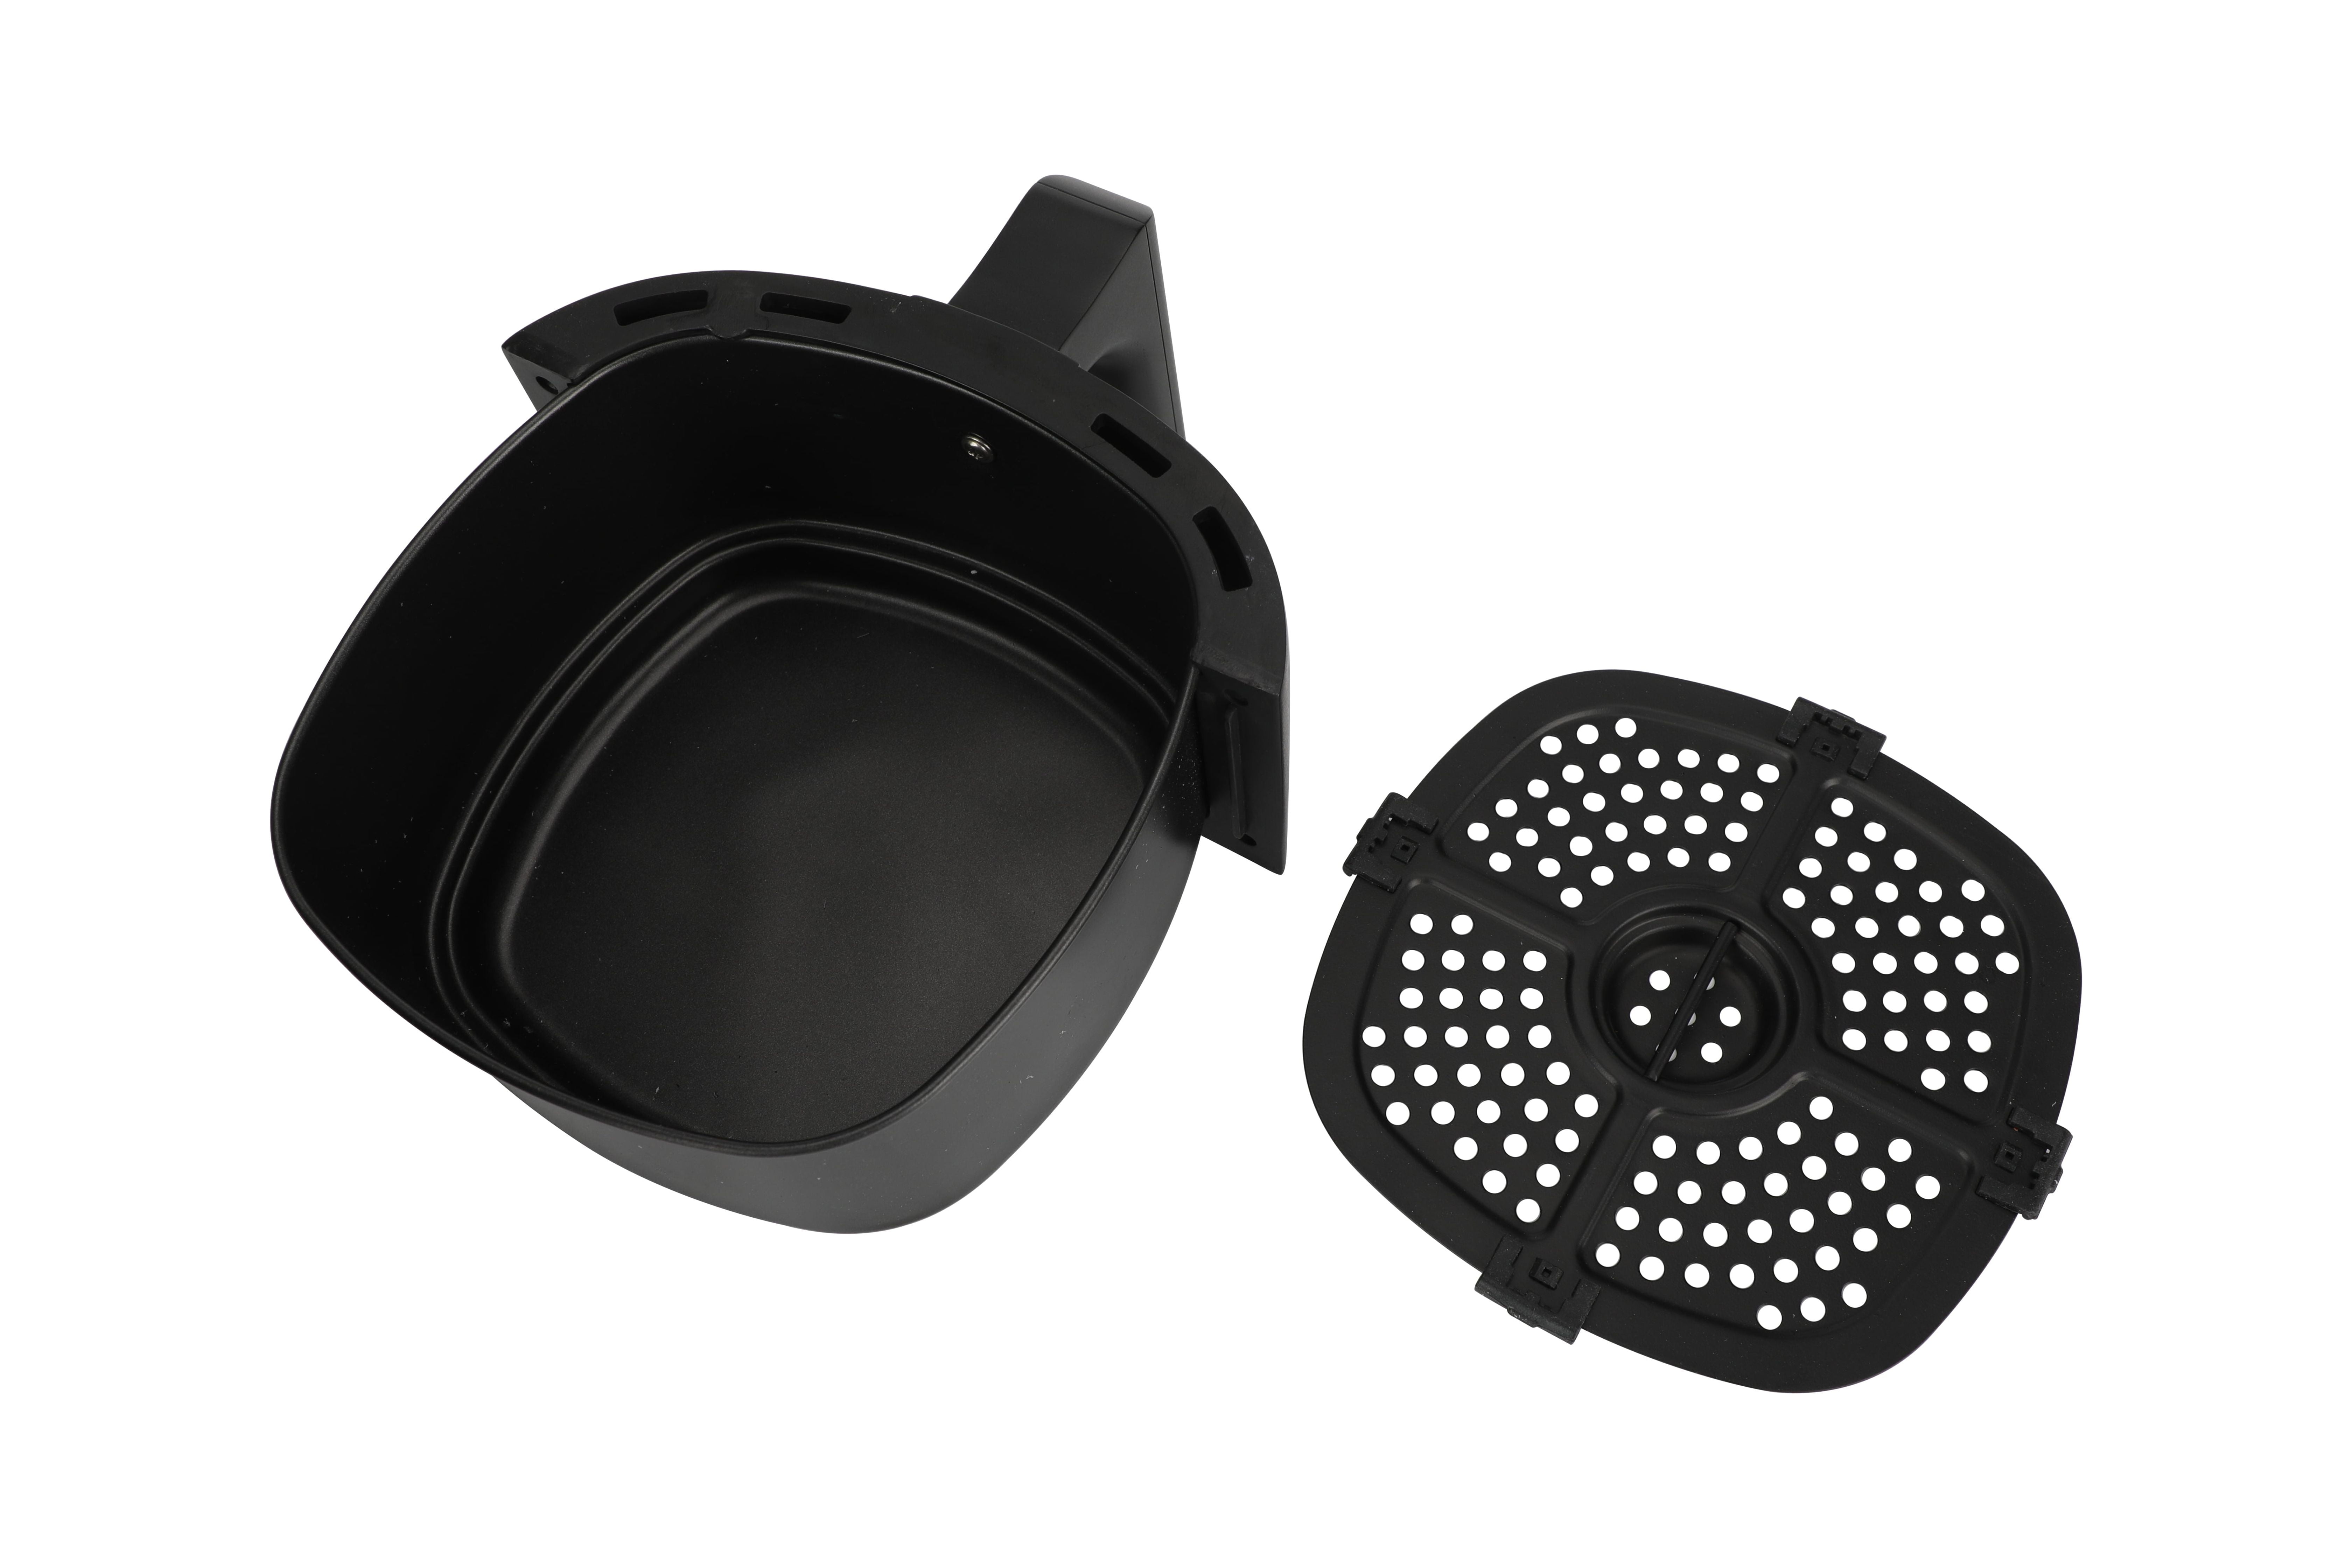 Mainstays Non-Stick Dishwasher Safe Basket Air Fryer - Black - 2.2 qt